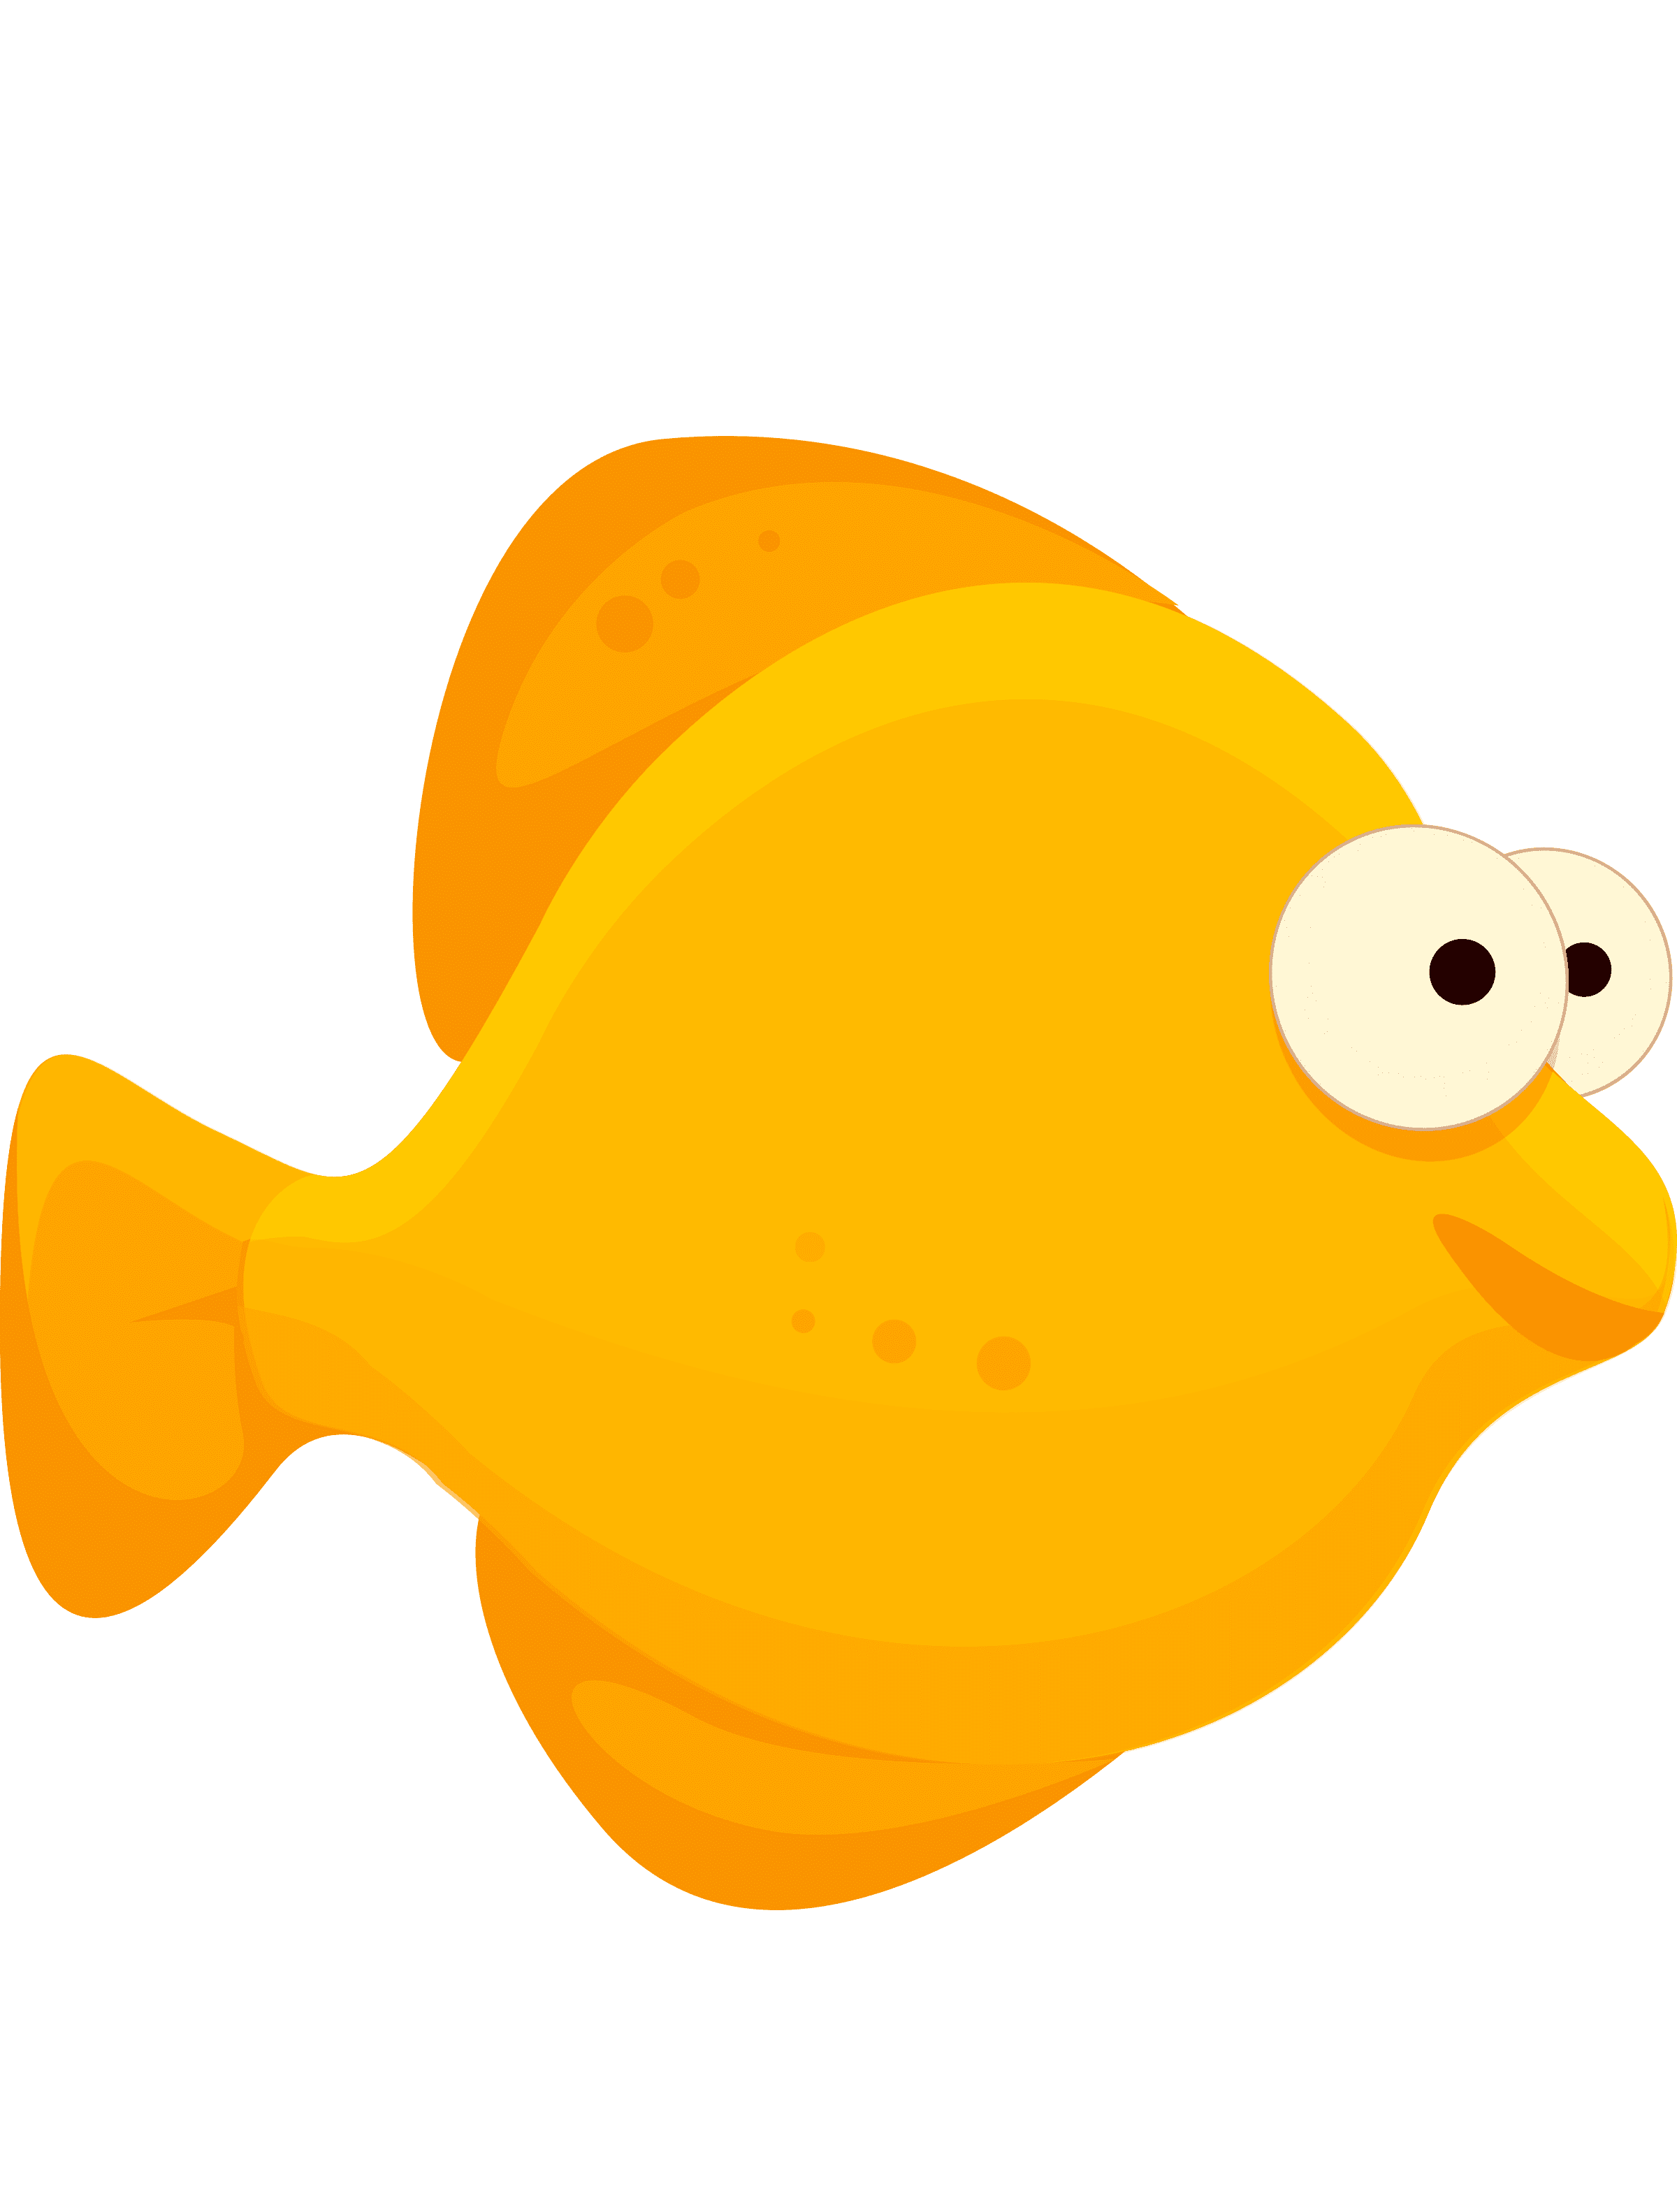 Раскраска Рыбка